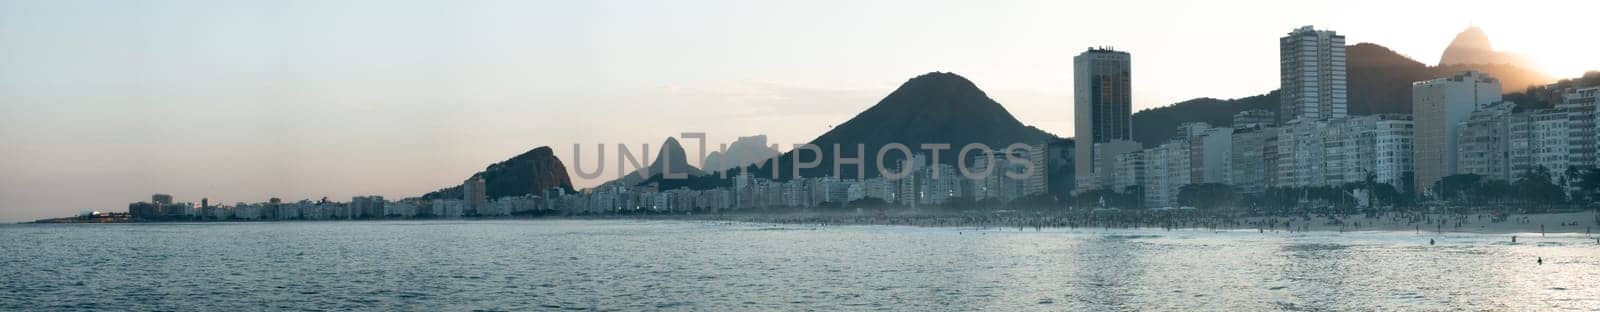 Majestic Sunset Over Rio de Janeiro Skyline and Beach by FerradalFCG